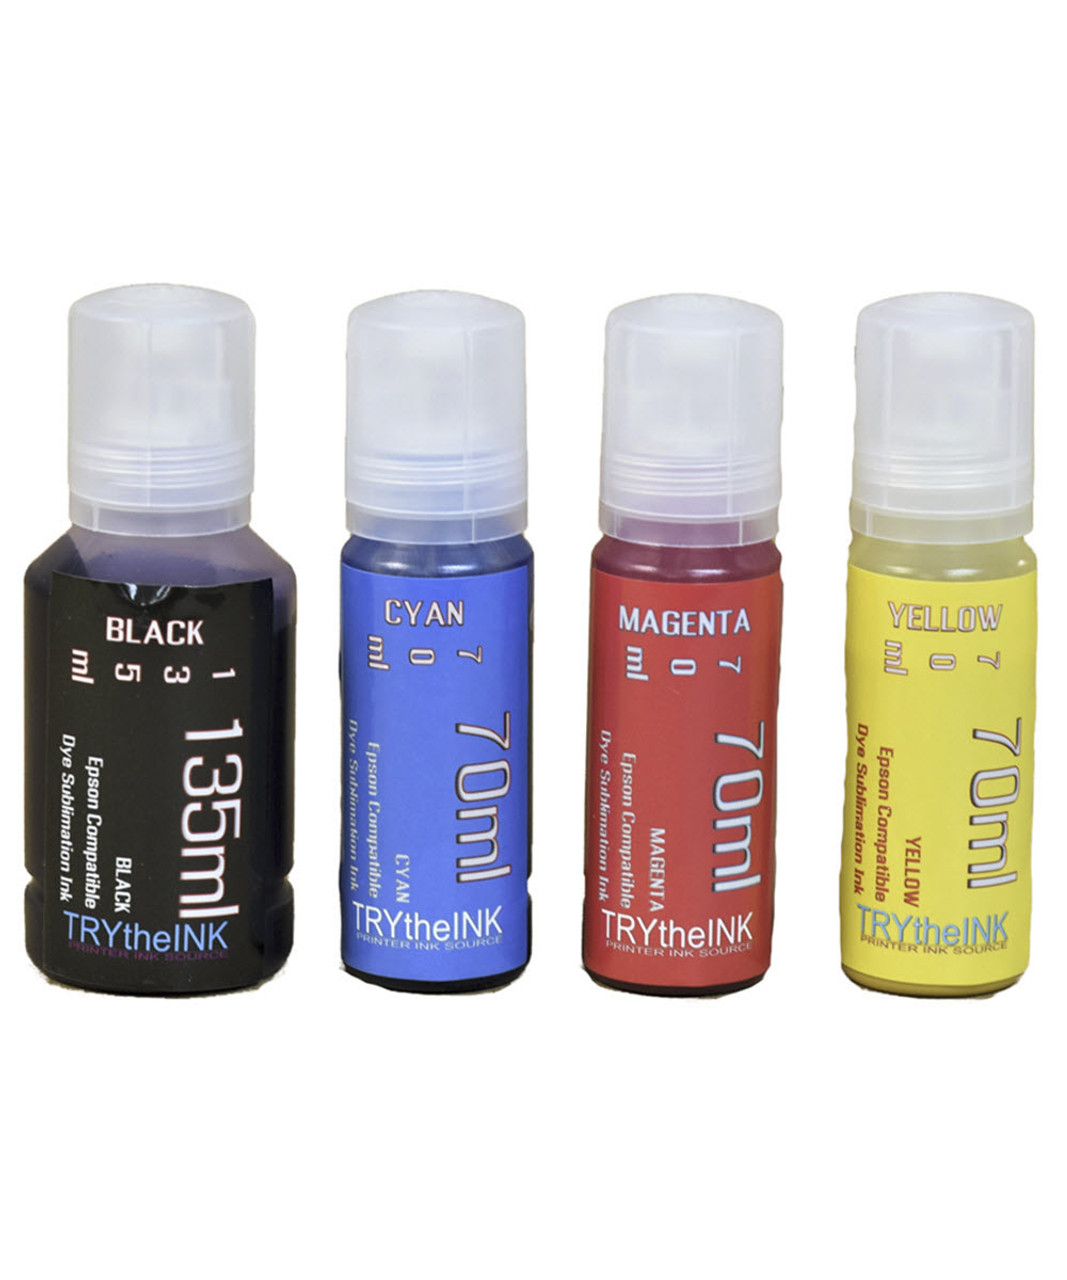 4 Color Package bottles Dye Sublimation Ink for EPSON EcoTank ET-4800 ET-4850 Printer